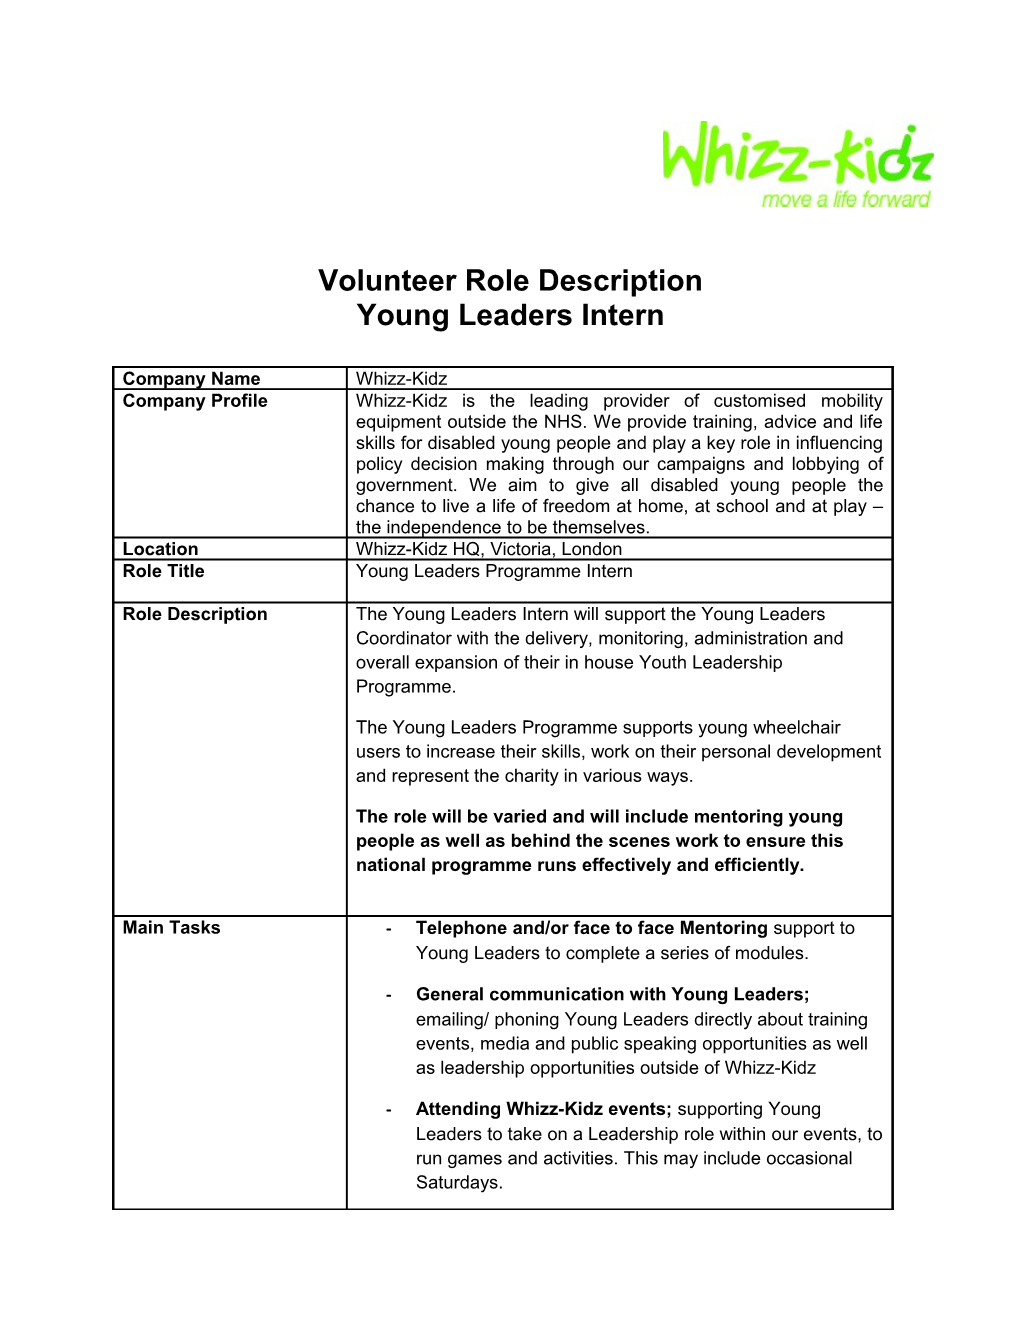 Volunteer Role Description s3